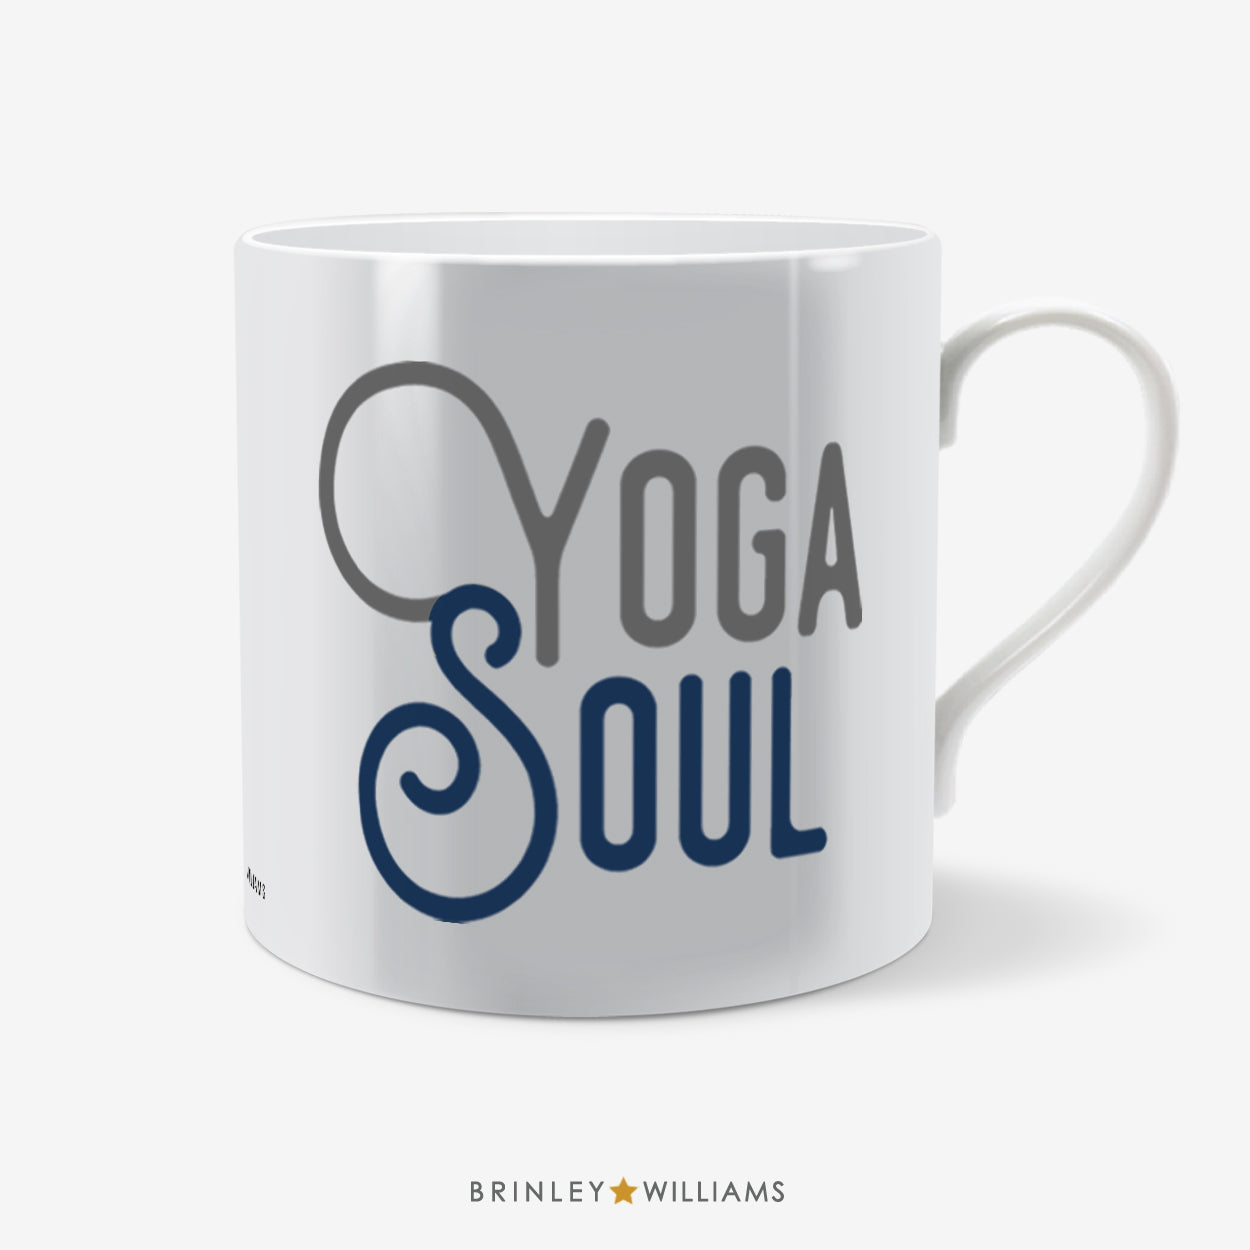 Yoga Soul Mug - Navy